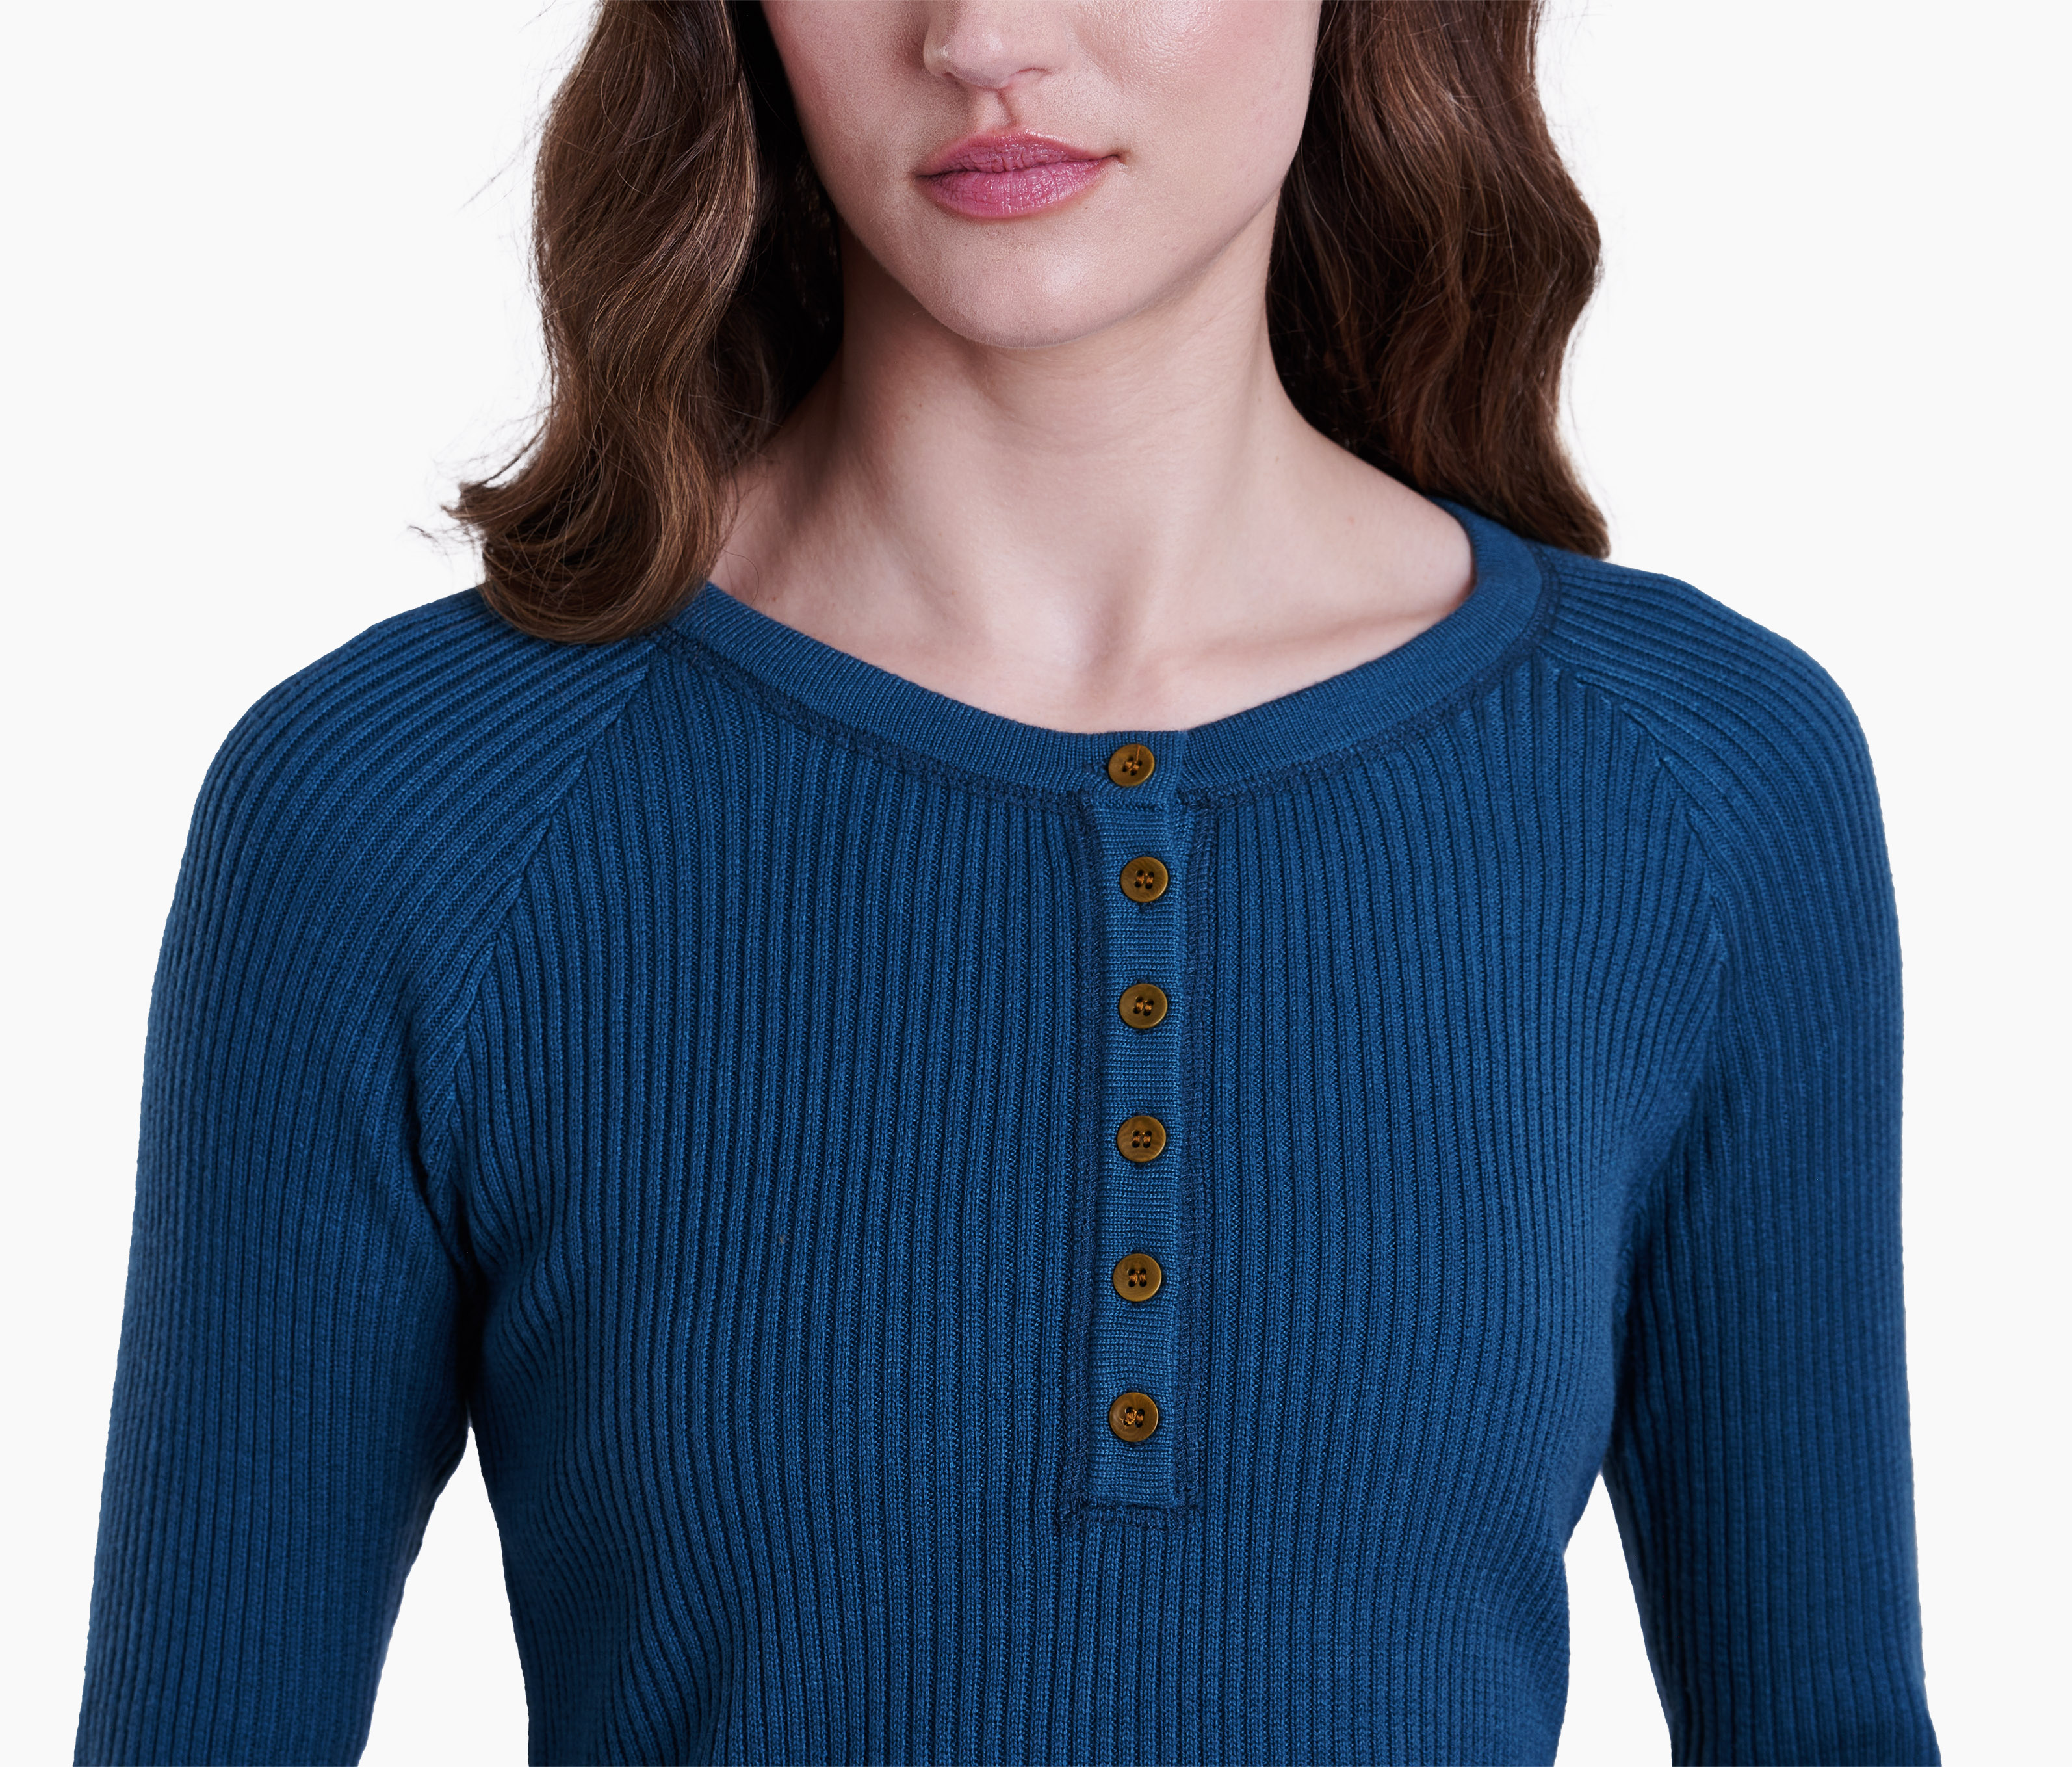 Gemma™ Sweater in Women's Long Sleeve